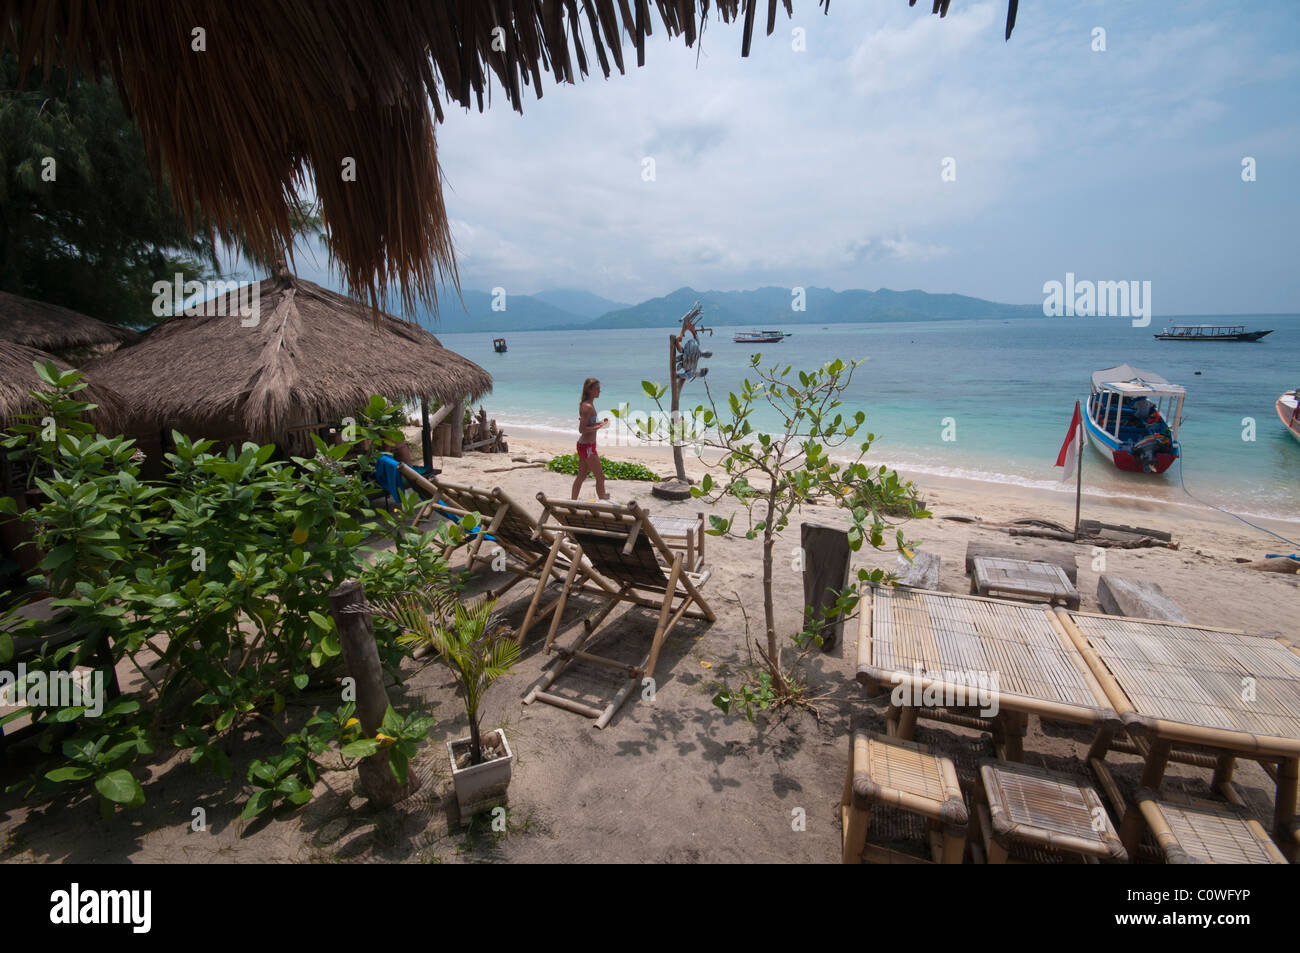 La piccola spiaggia di Gili Air, l'isola più piccola del gruppo di isole Gili al largo di Lombok, Indonesia Foto Stock